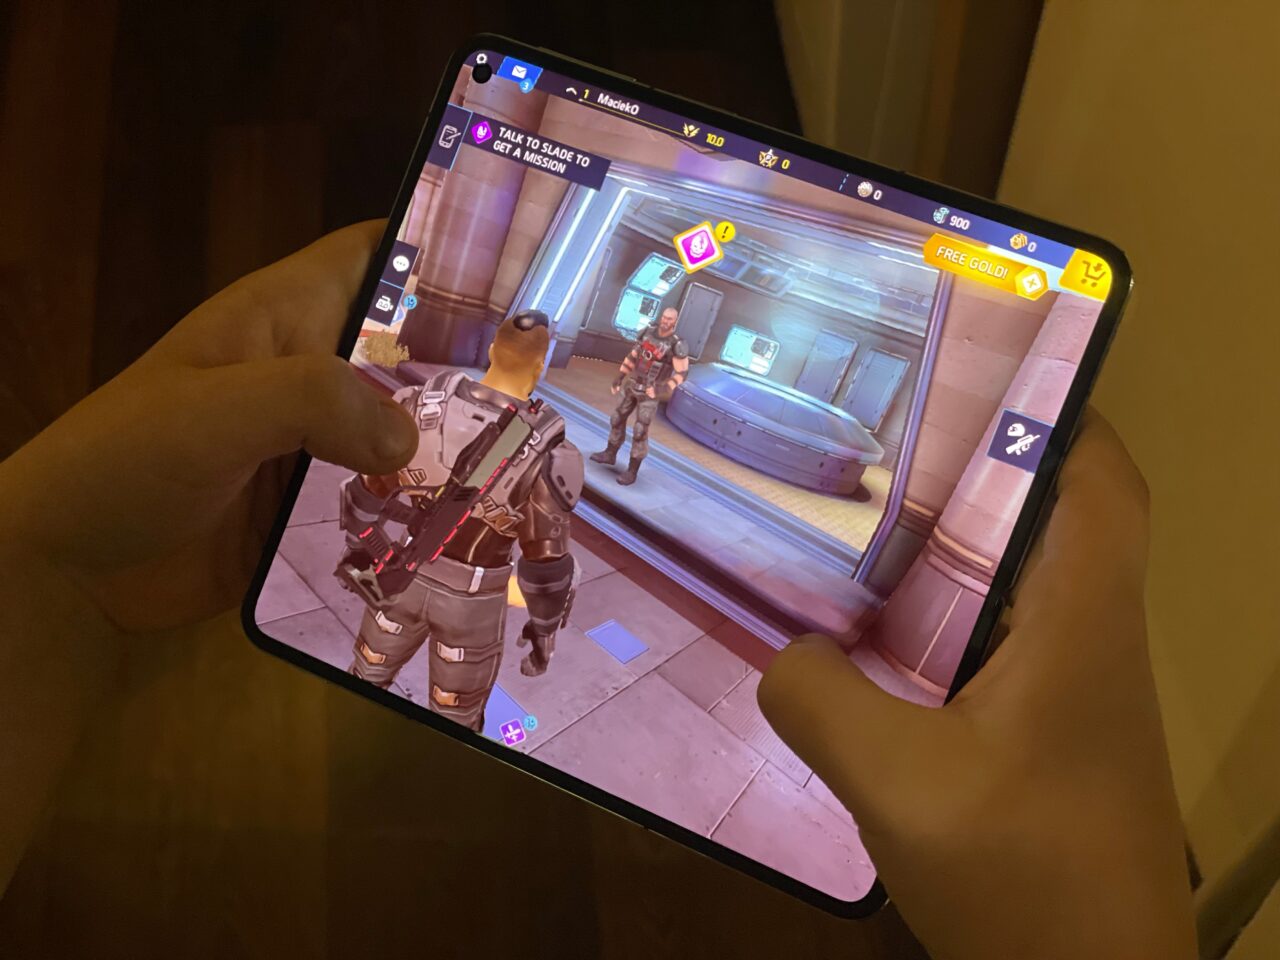 Ujęcie rąk trzymających tablet z wyświetlaną grą wideo, gdzie na ekranie widoczna jest postać w futurystycznym pancerzu oraz interfejs gry. recenzja oneplus open